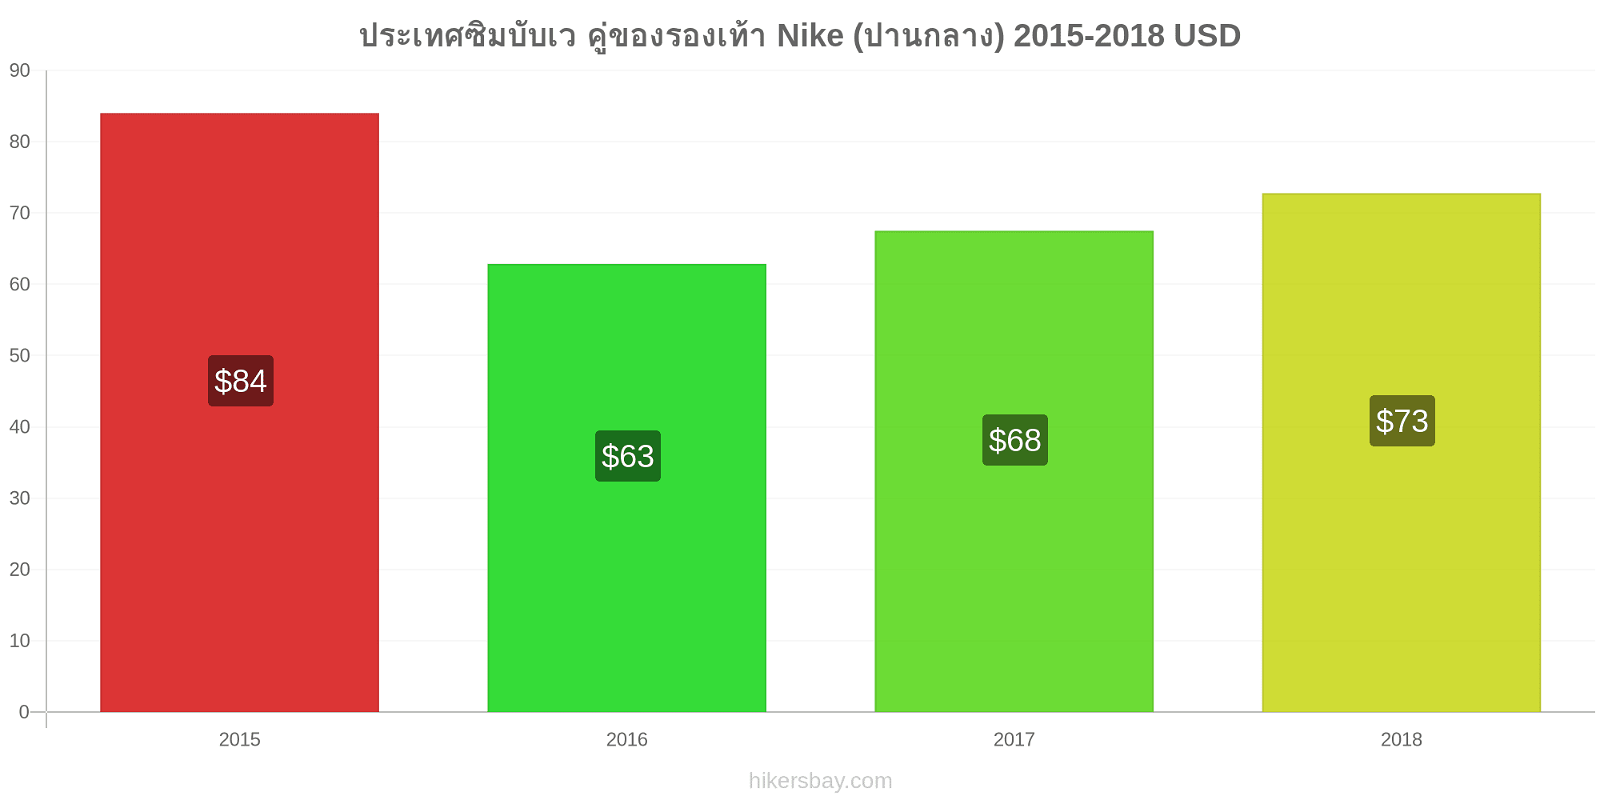 ประเทศซิมบับเว การเปลี่ยนแปลงราคา คู่ของรองเท้า Nike (ปานกลาง) hikersbay.com